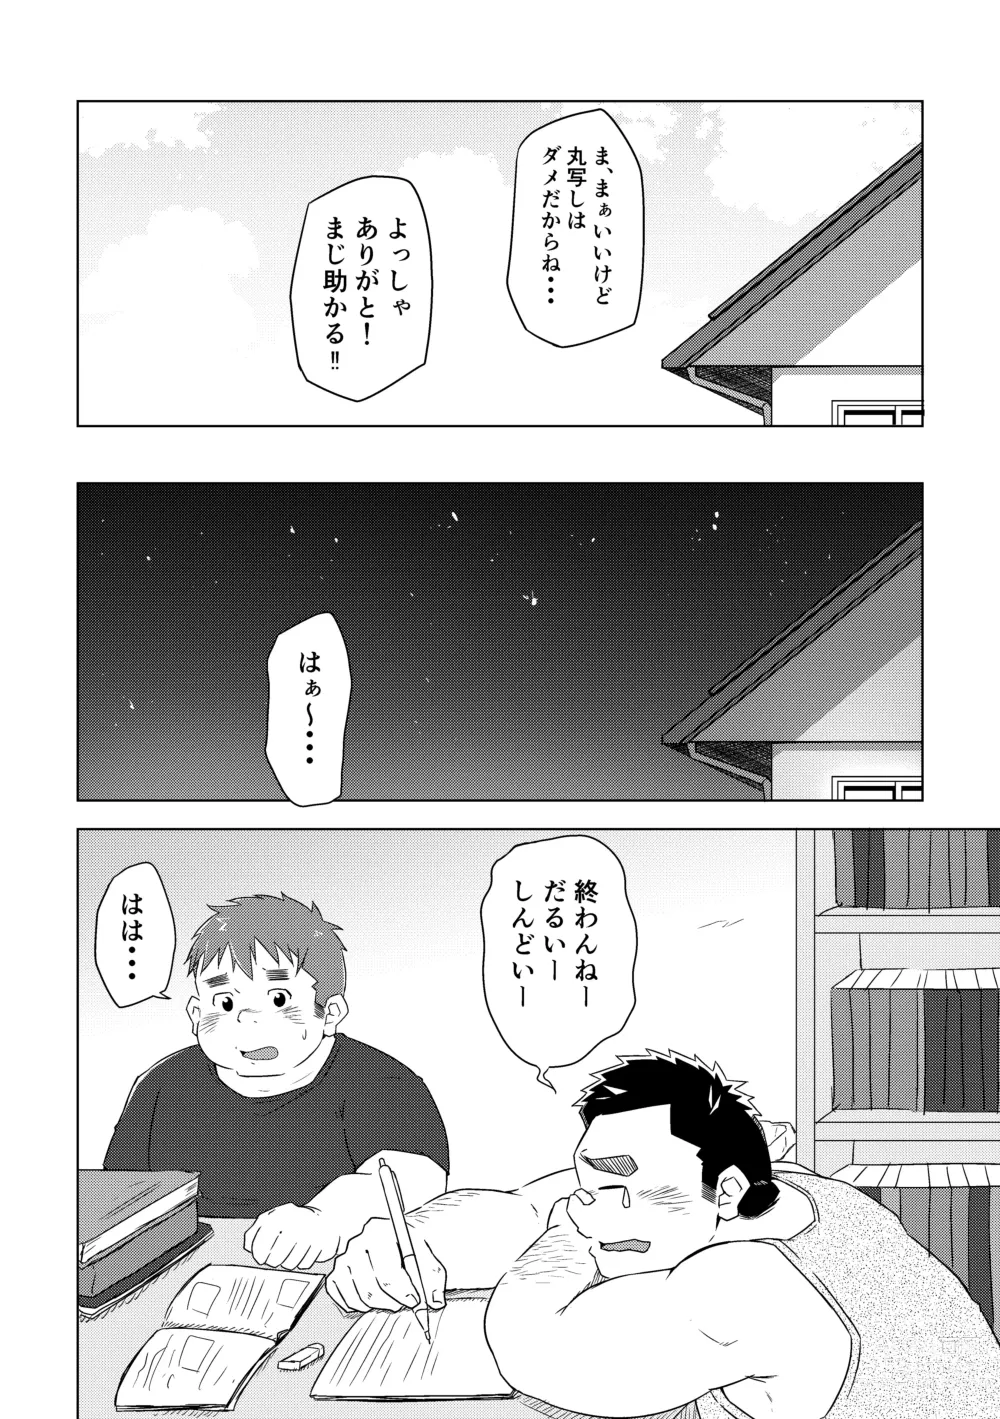 Page 10 of doujinshi Manten no Hoshi 1